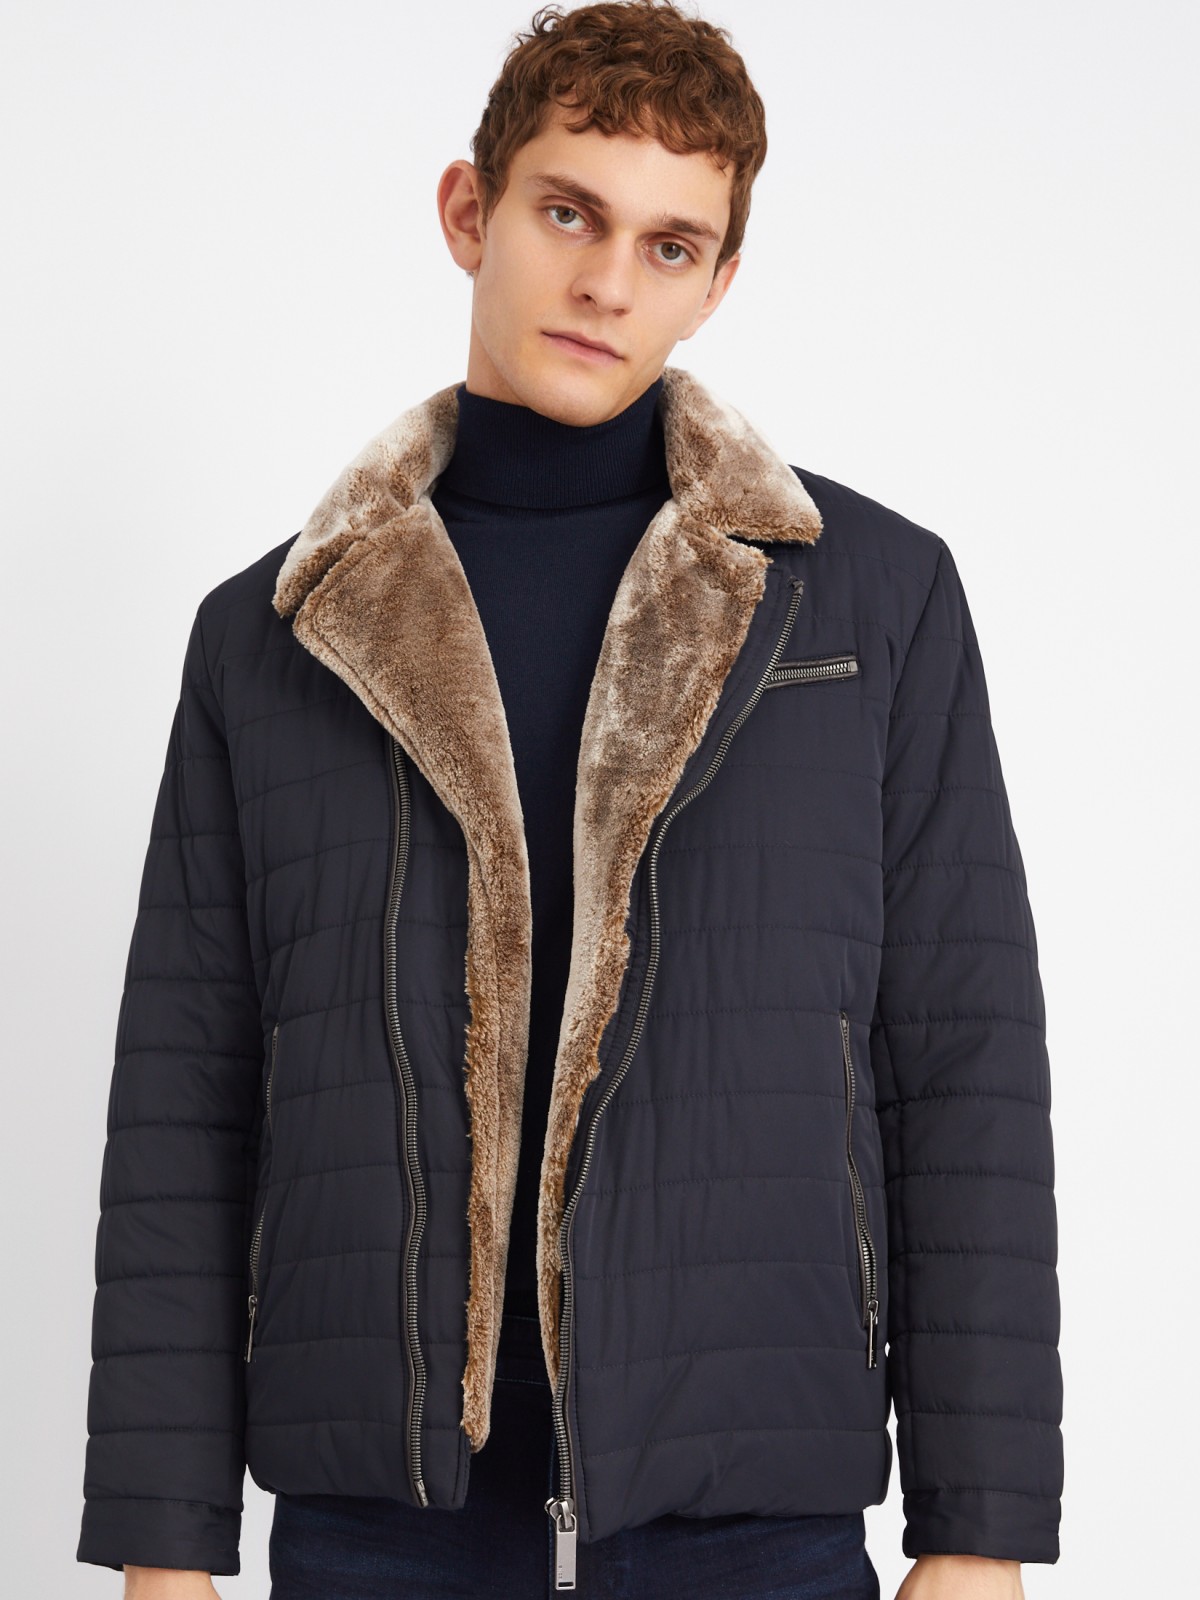 Тёплая стёганая куртка-косуха с подкладкой из экомеха на синтепоне zolla 013345150044, цвет темно-синий, размер L